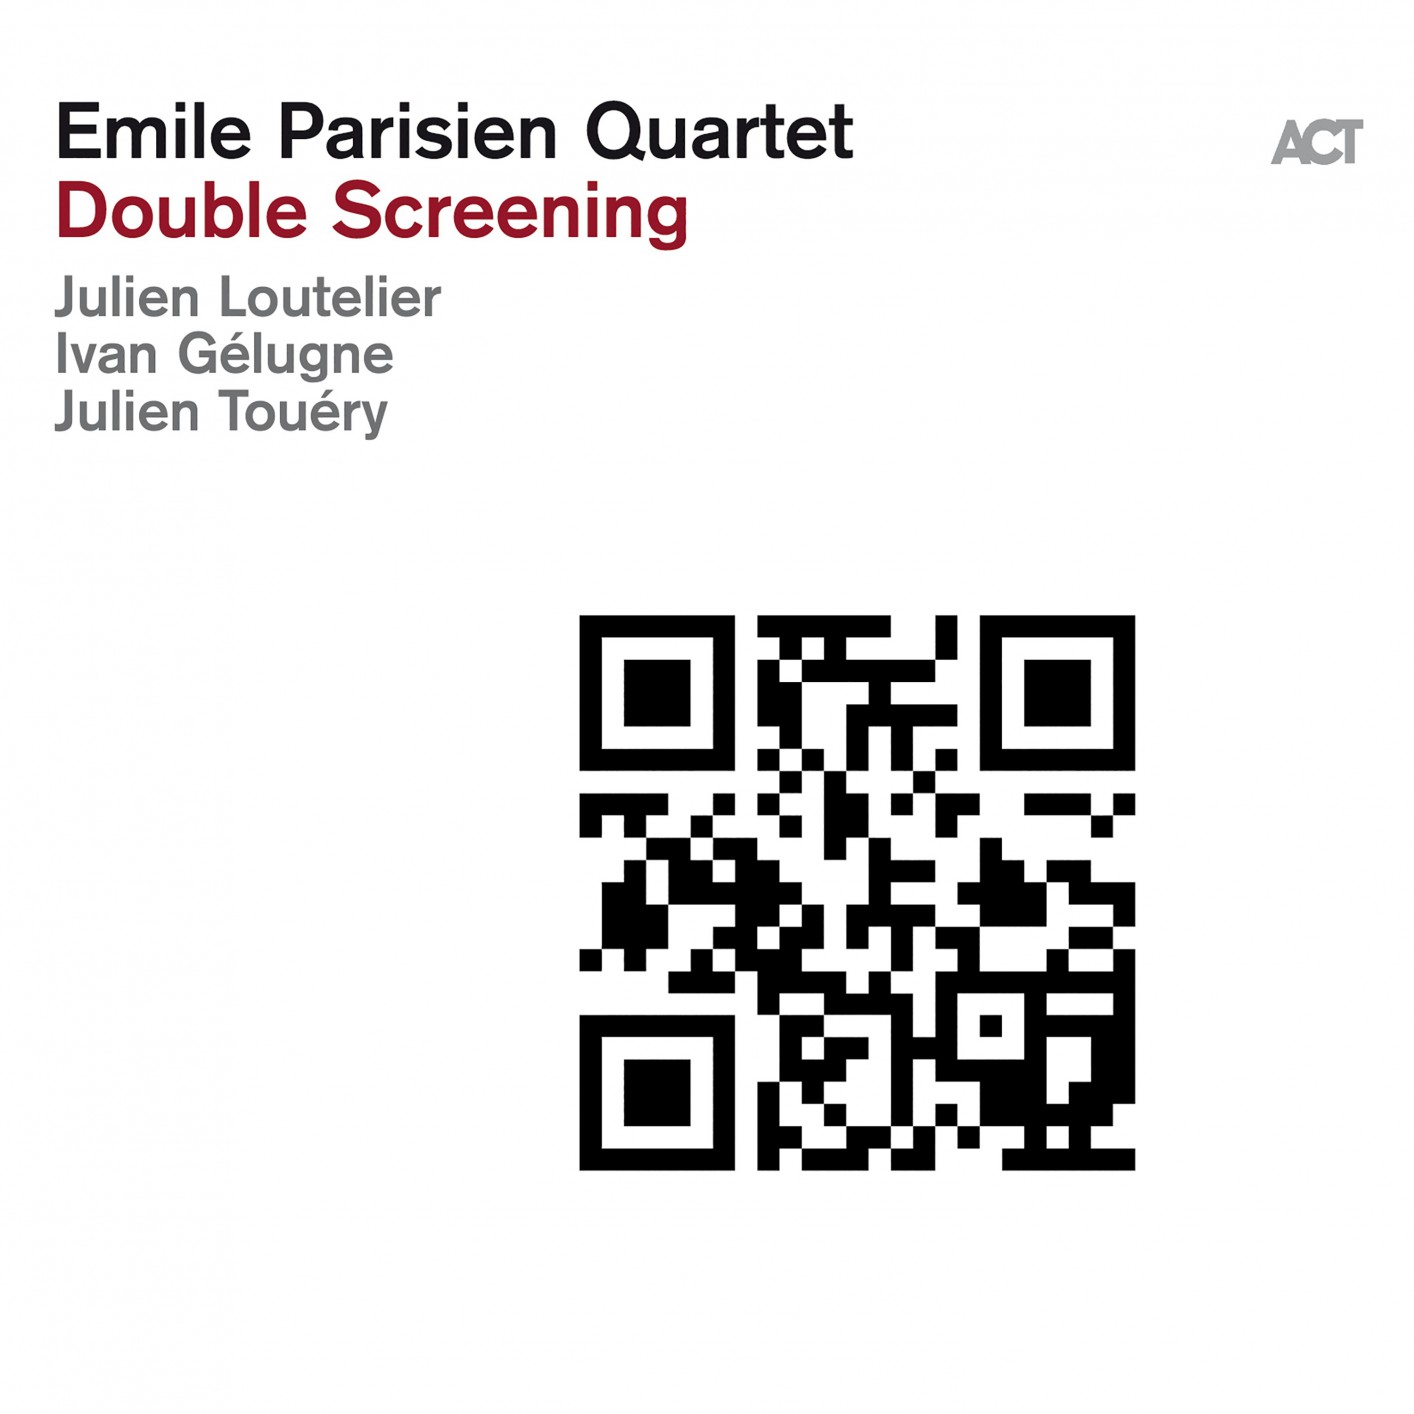 Emile Parisien Quartet - Double Screening (2019) [FLAC 24bit/96kHz]